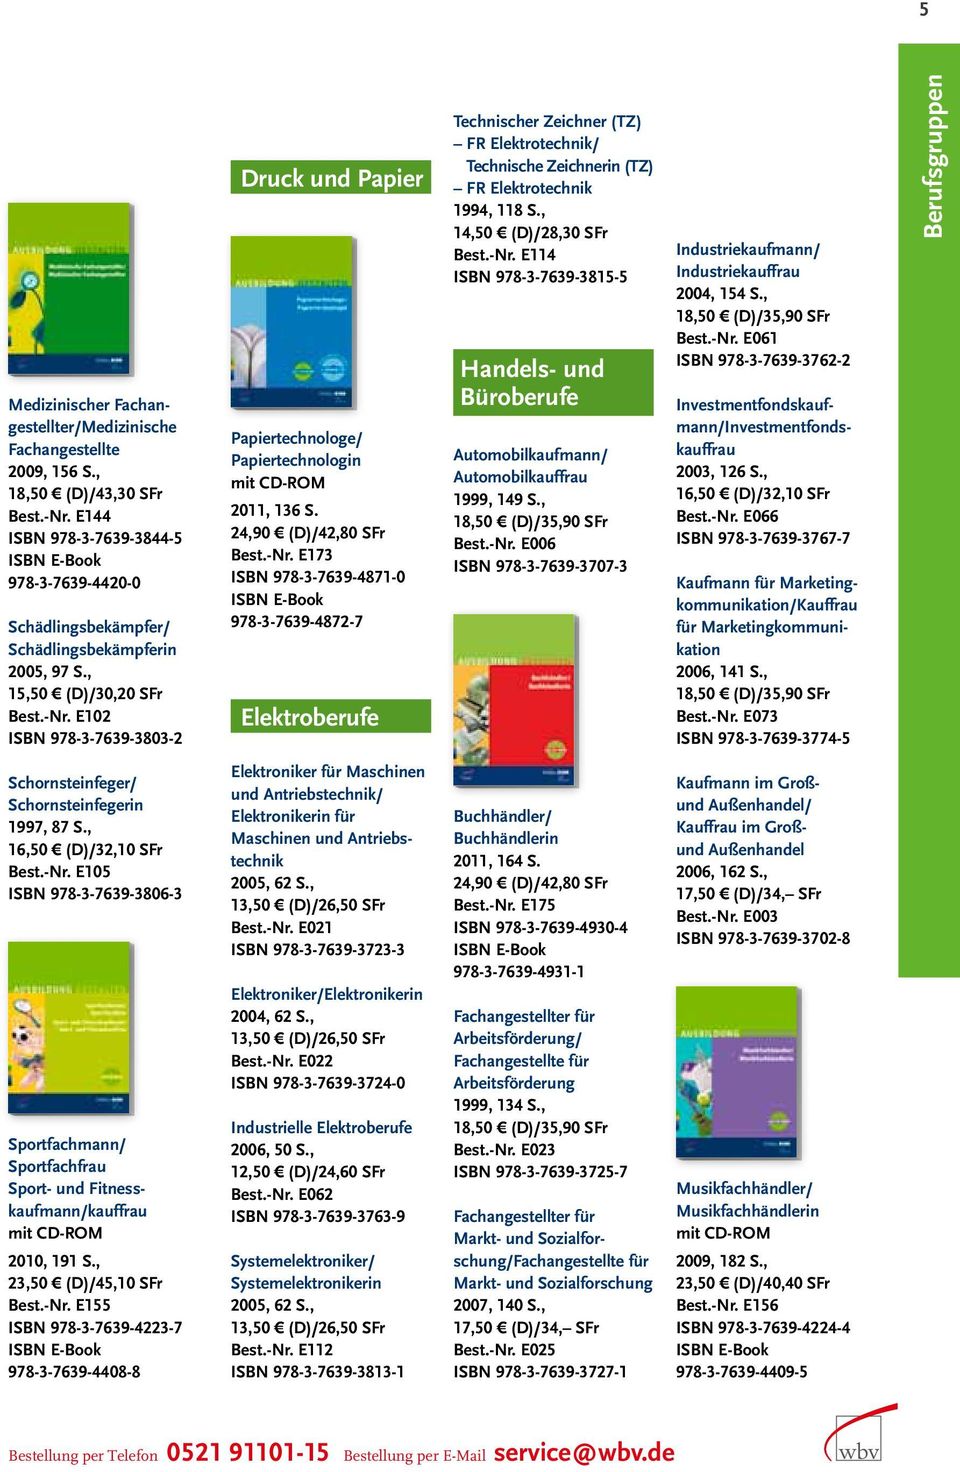 E102 ISBN 978-3-7639-3803-2 Druck und Papier Papiertechnologe/ Papiertechnologin 2011, 136 S. 24,90 (D)/42,80 SFr Best.-Nr.